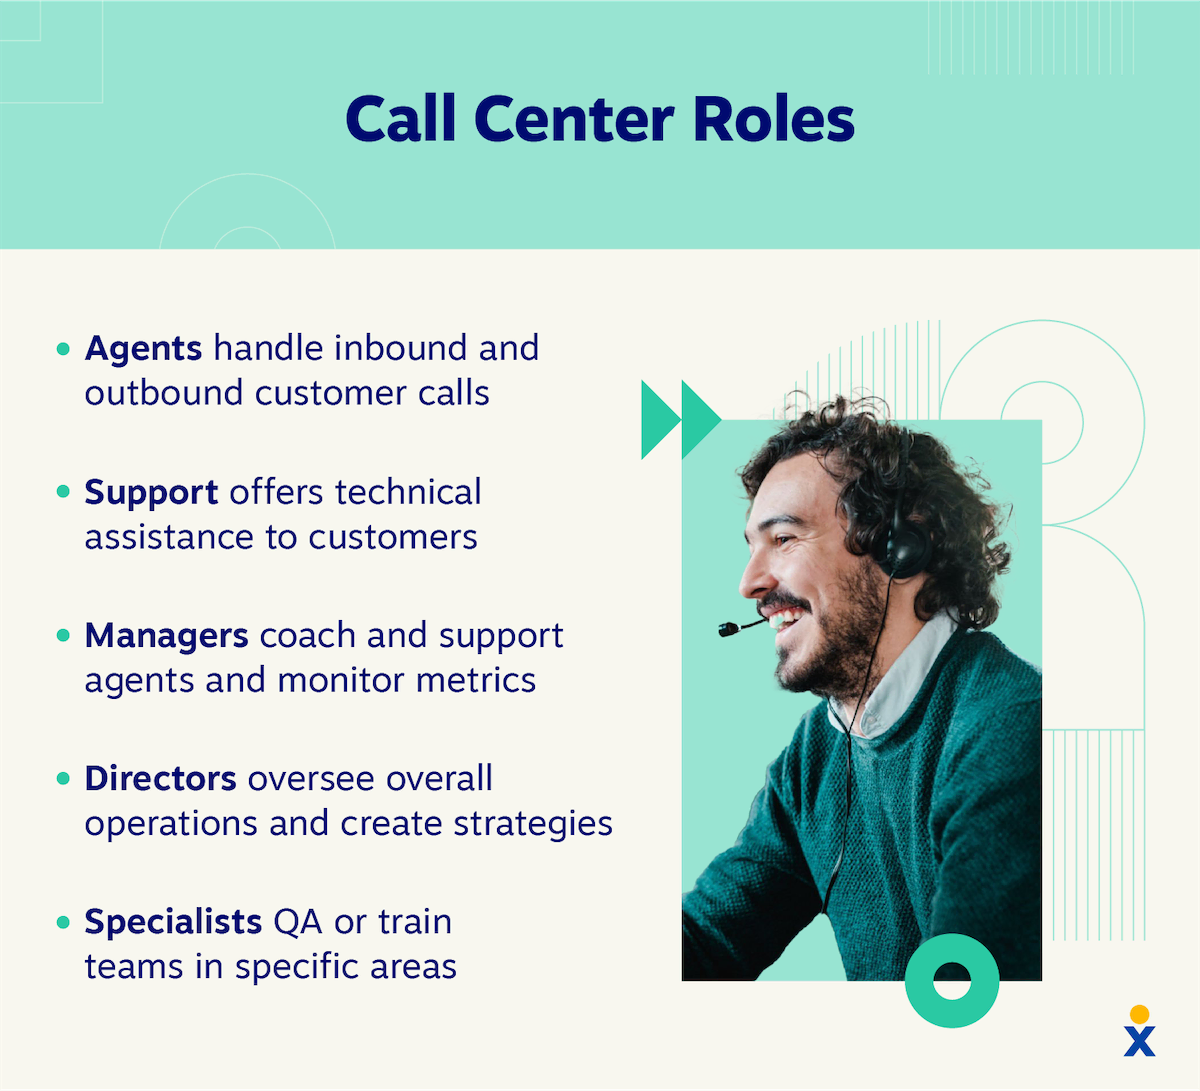 Cinci roluri de call center, inclusiv agenți, suport, manageri, directori și specialiști.